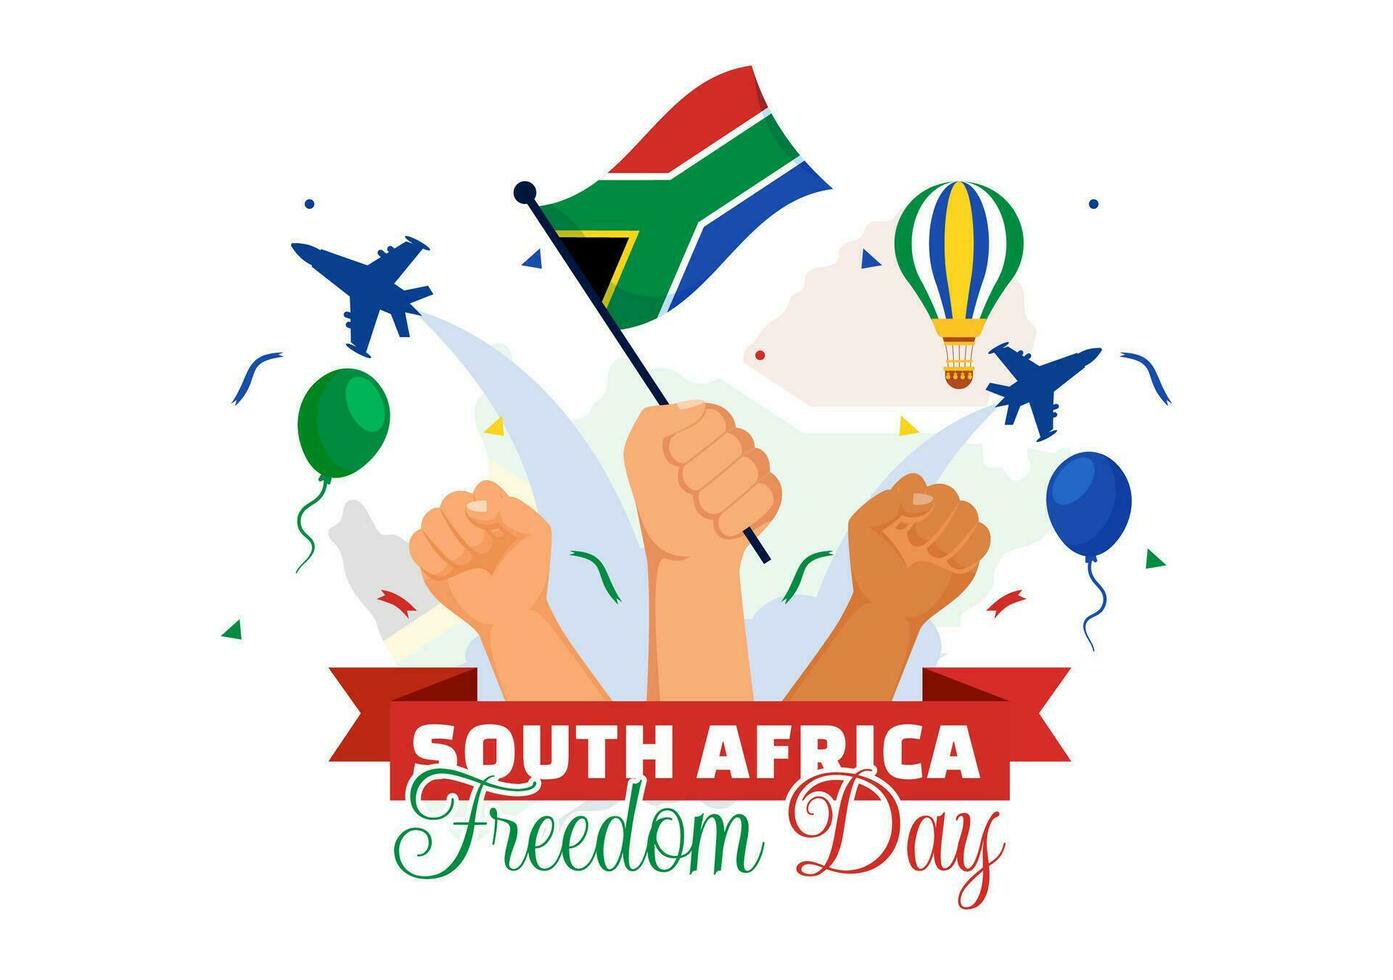 contento Sud Africa la libertà giorno vettore illustrazione su 27 aprile con agitando bandiera e nastro nel nazionale vacanza piatto cartone animato sfondo design